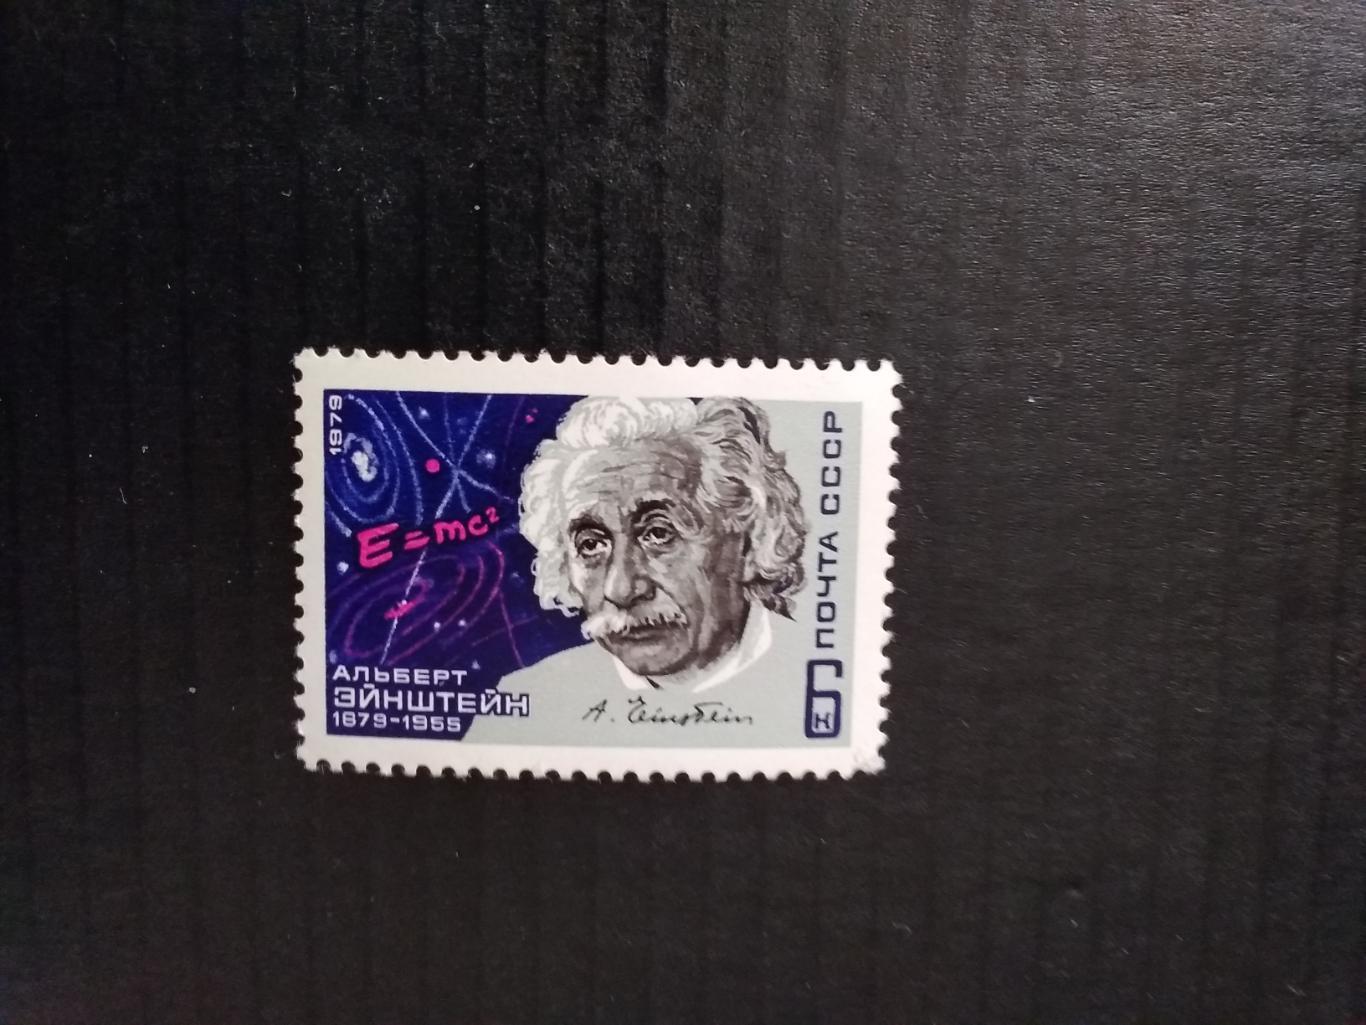 Альберт Эйнштейн 1879-1955.Почта СССР 1979 г.